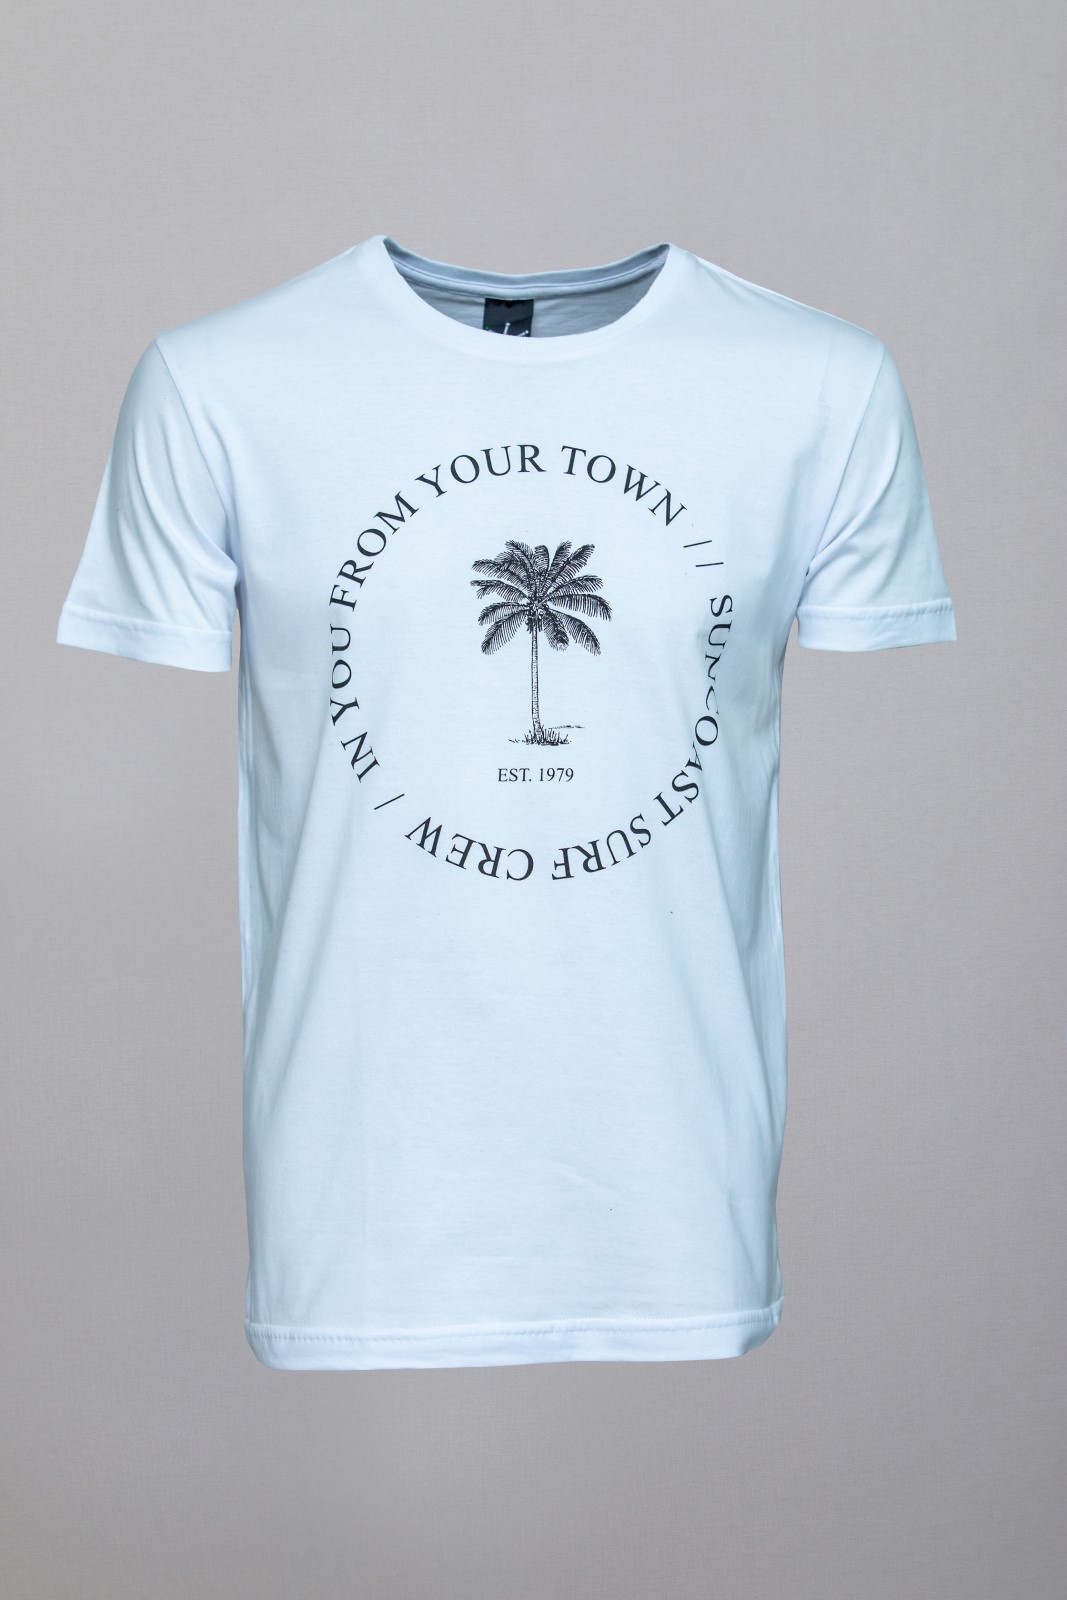 Camiseta CoolWave Costa do Sol - Foto 1